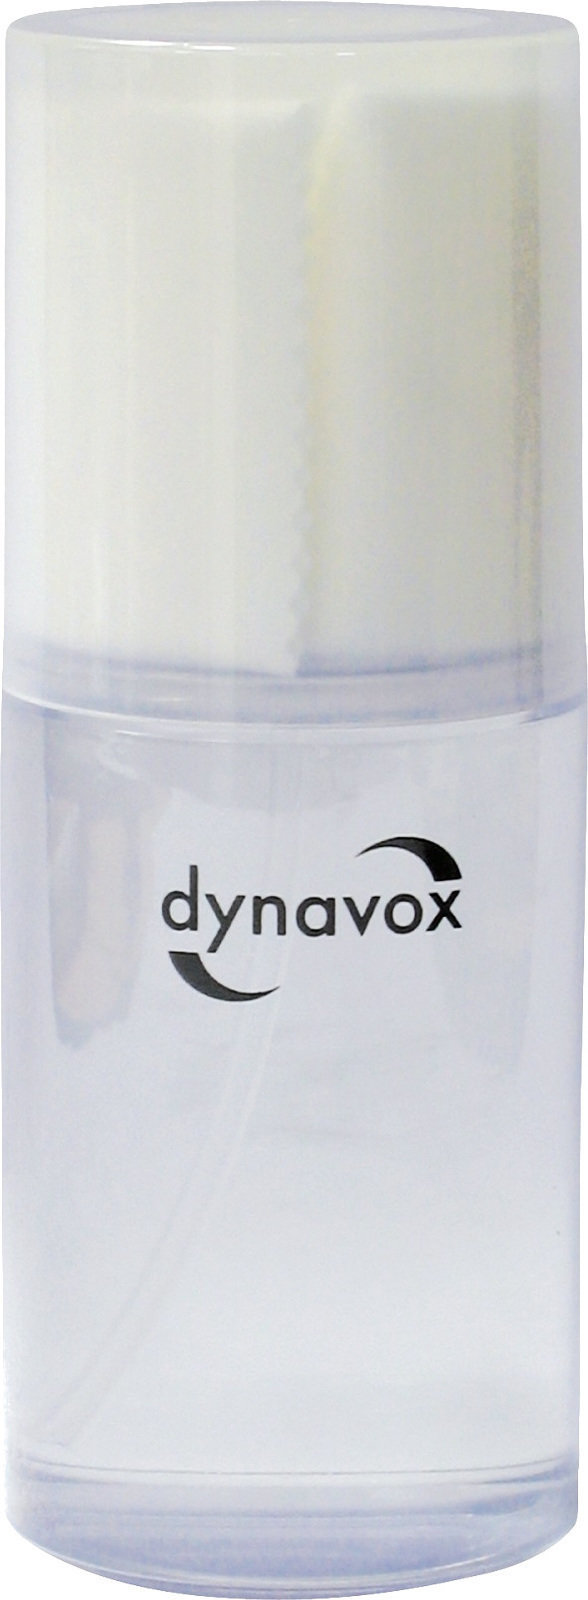 Čisticí prostředek pro LP desky Dynavox Cleaning Fluid